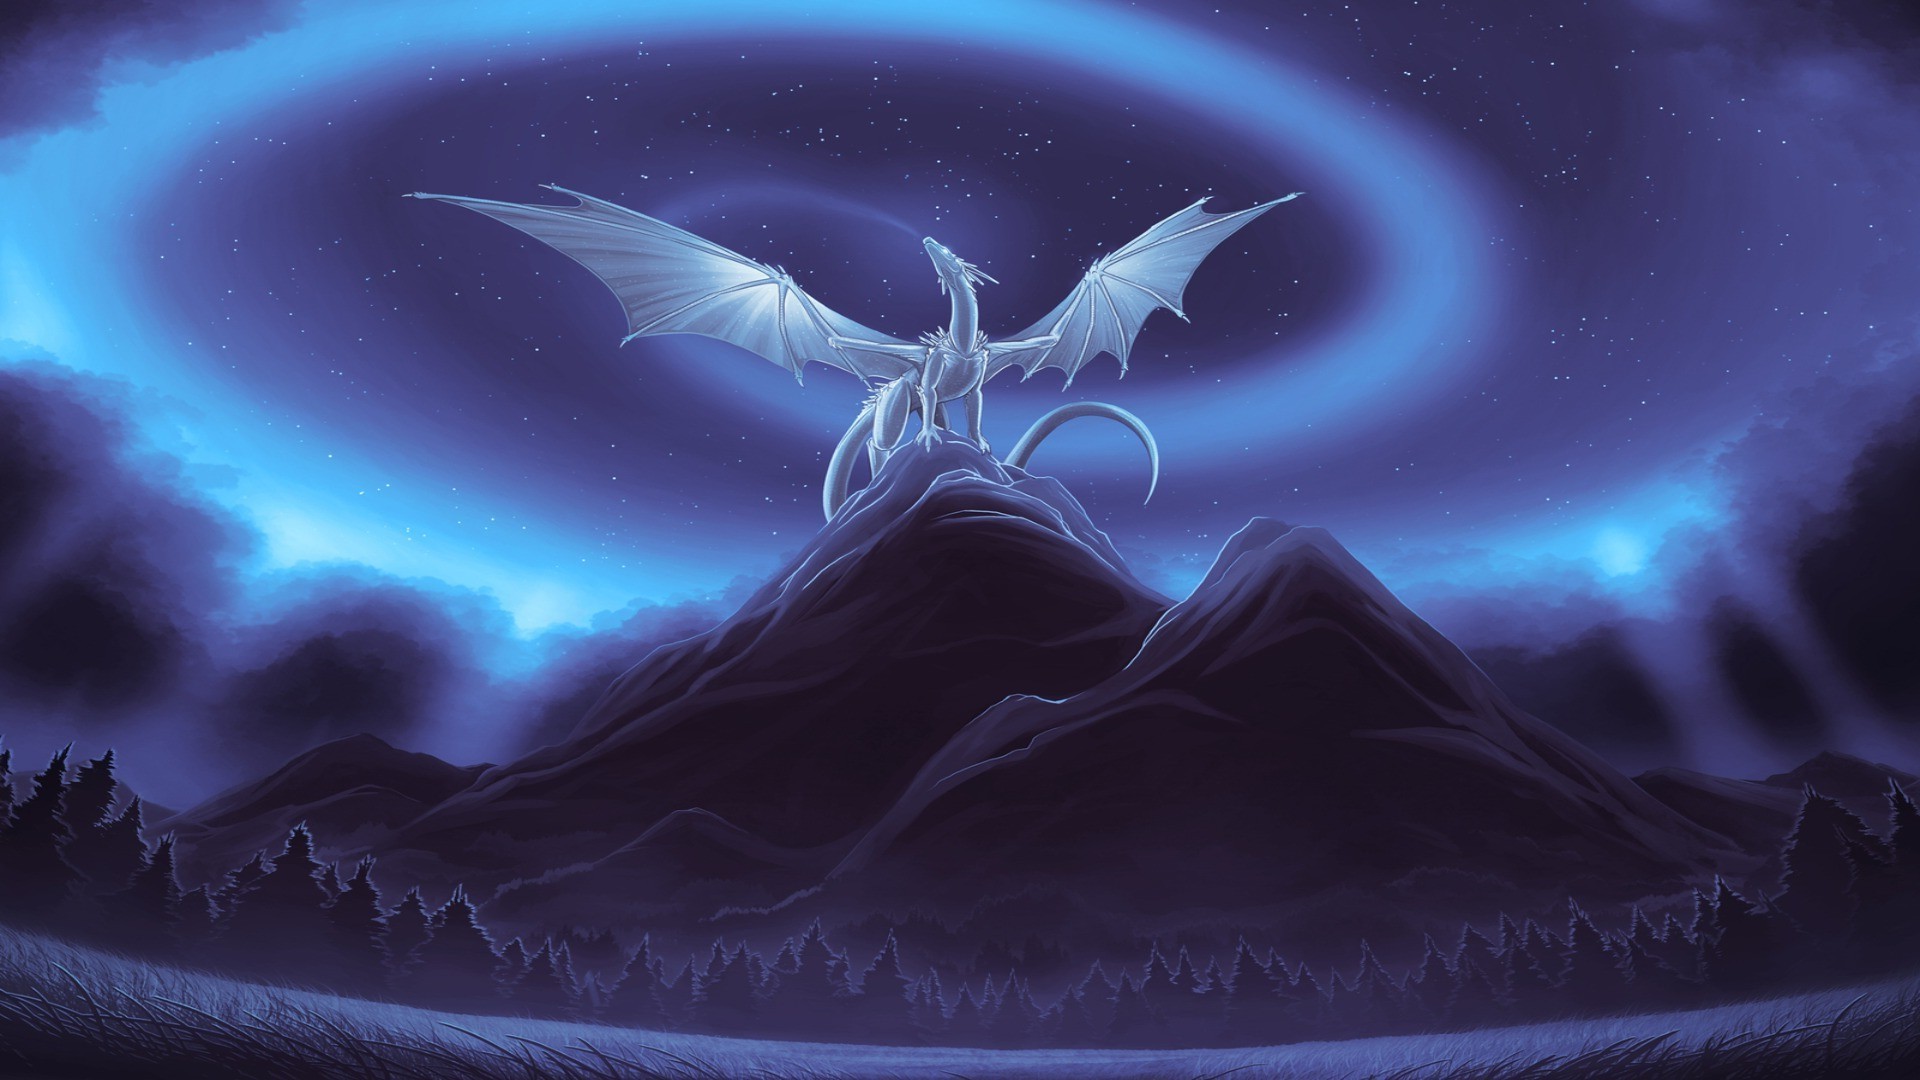 драконы луна искусство аннотация рабочего стола небо наука планеты темный путешествия иллюстрация